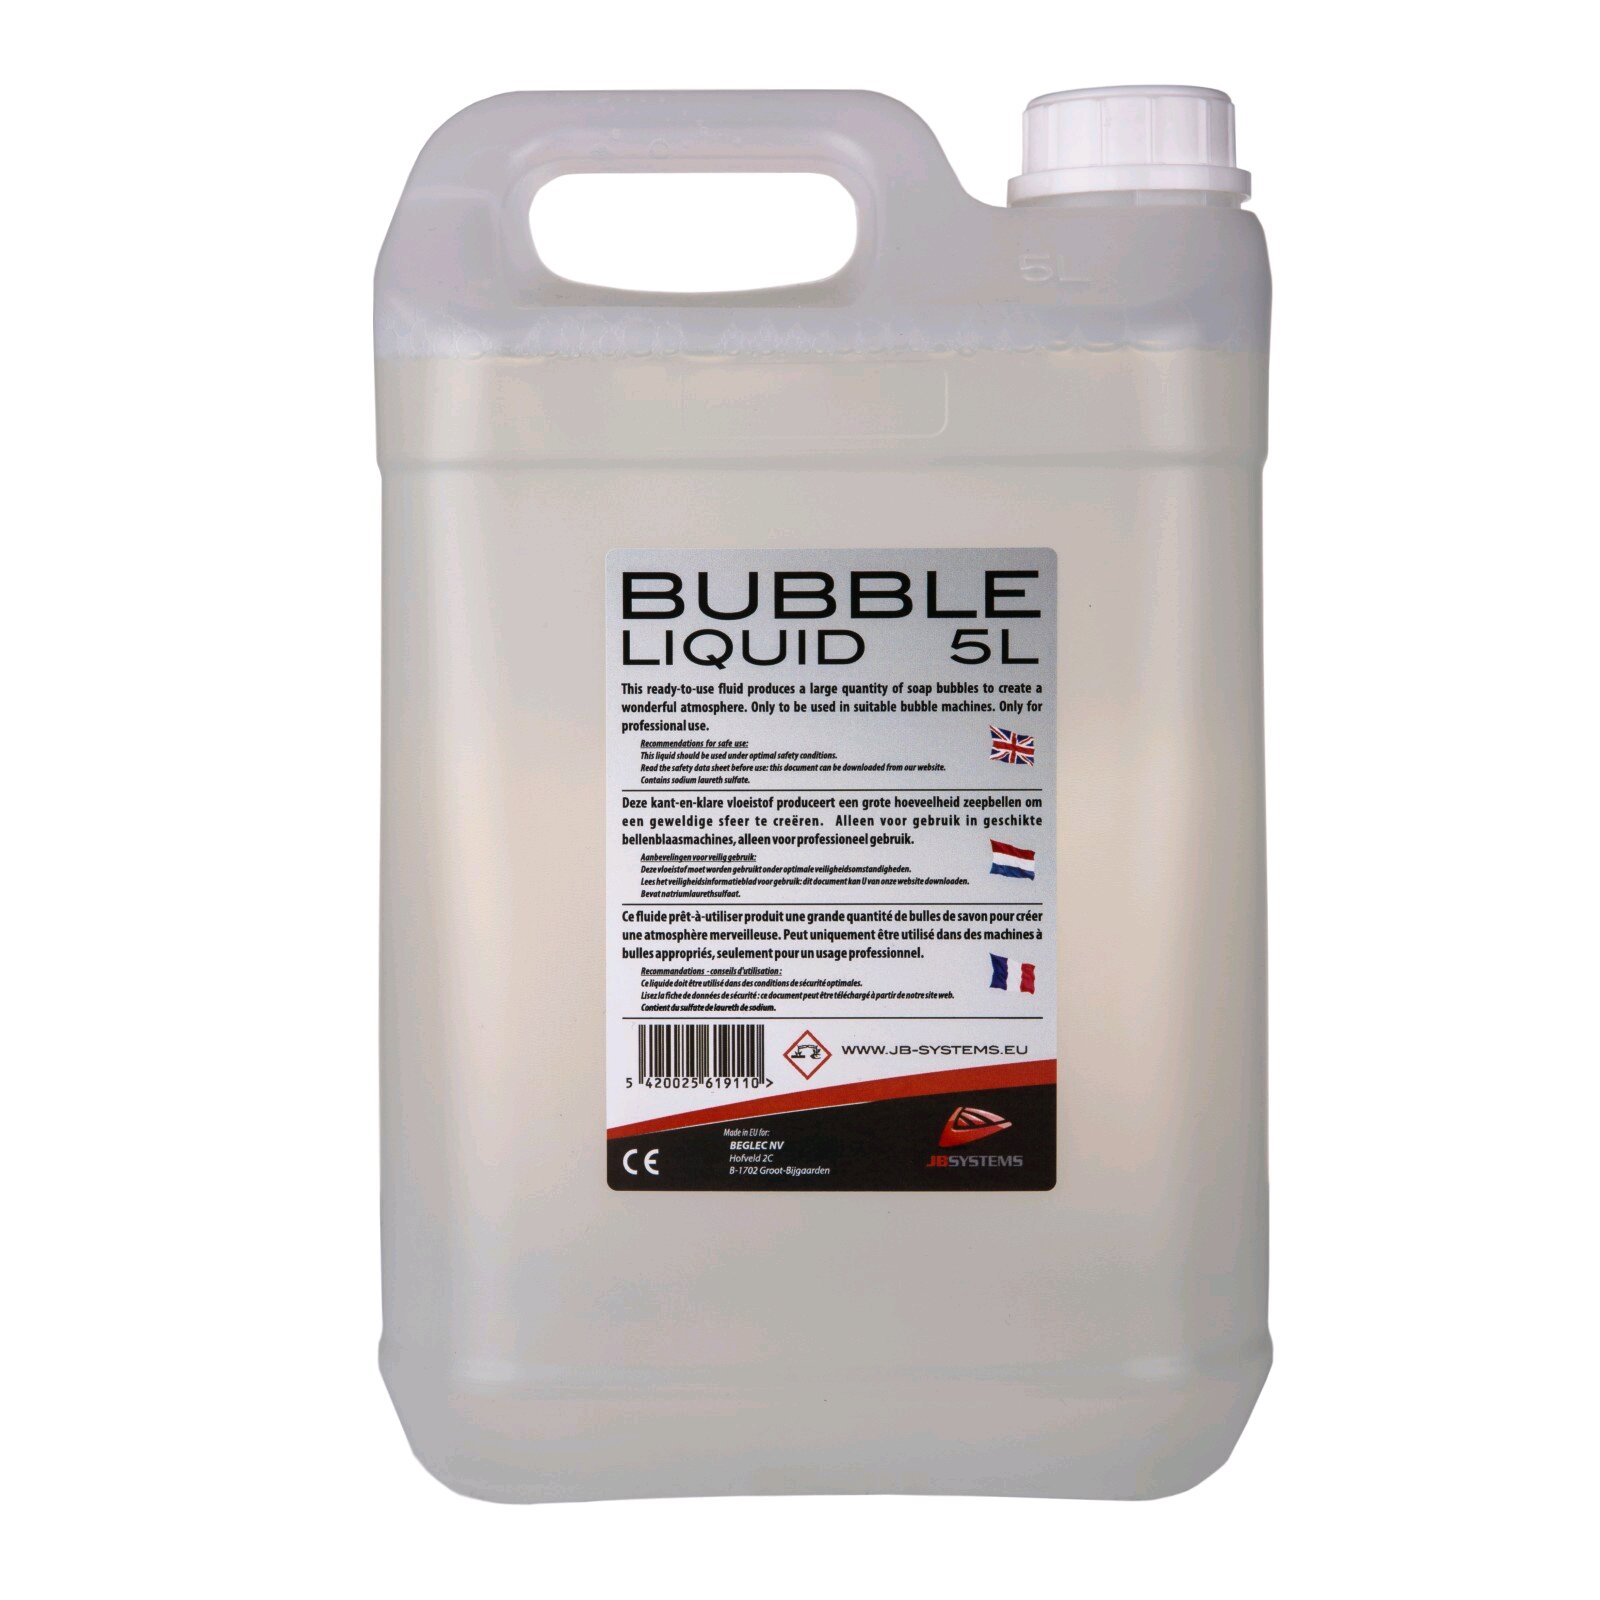 JBSYSTEMS BUBBLE LIQUID 5L - 5L bubble liquid : photo 1